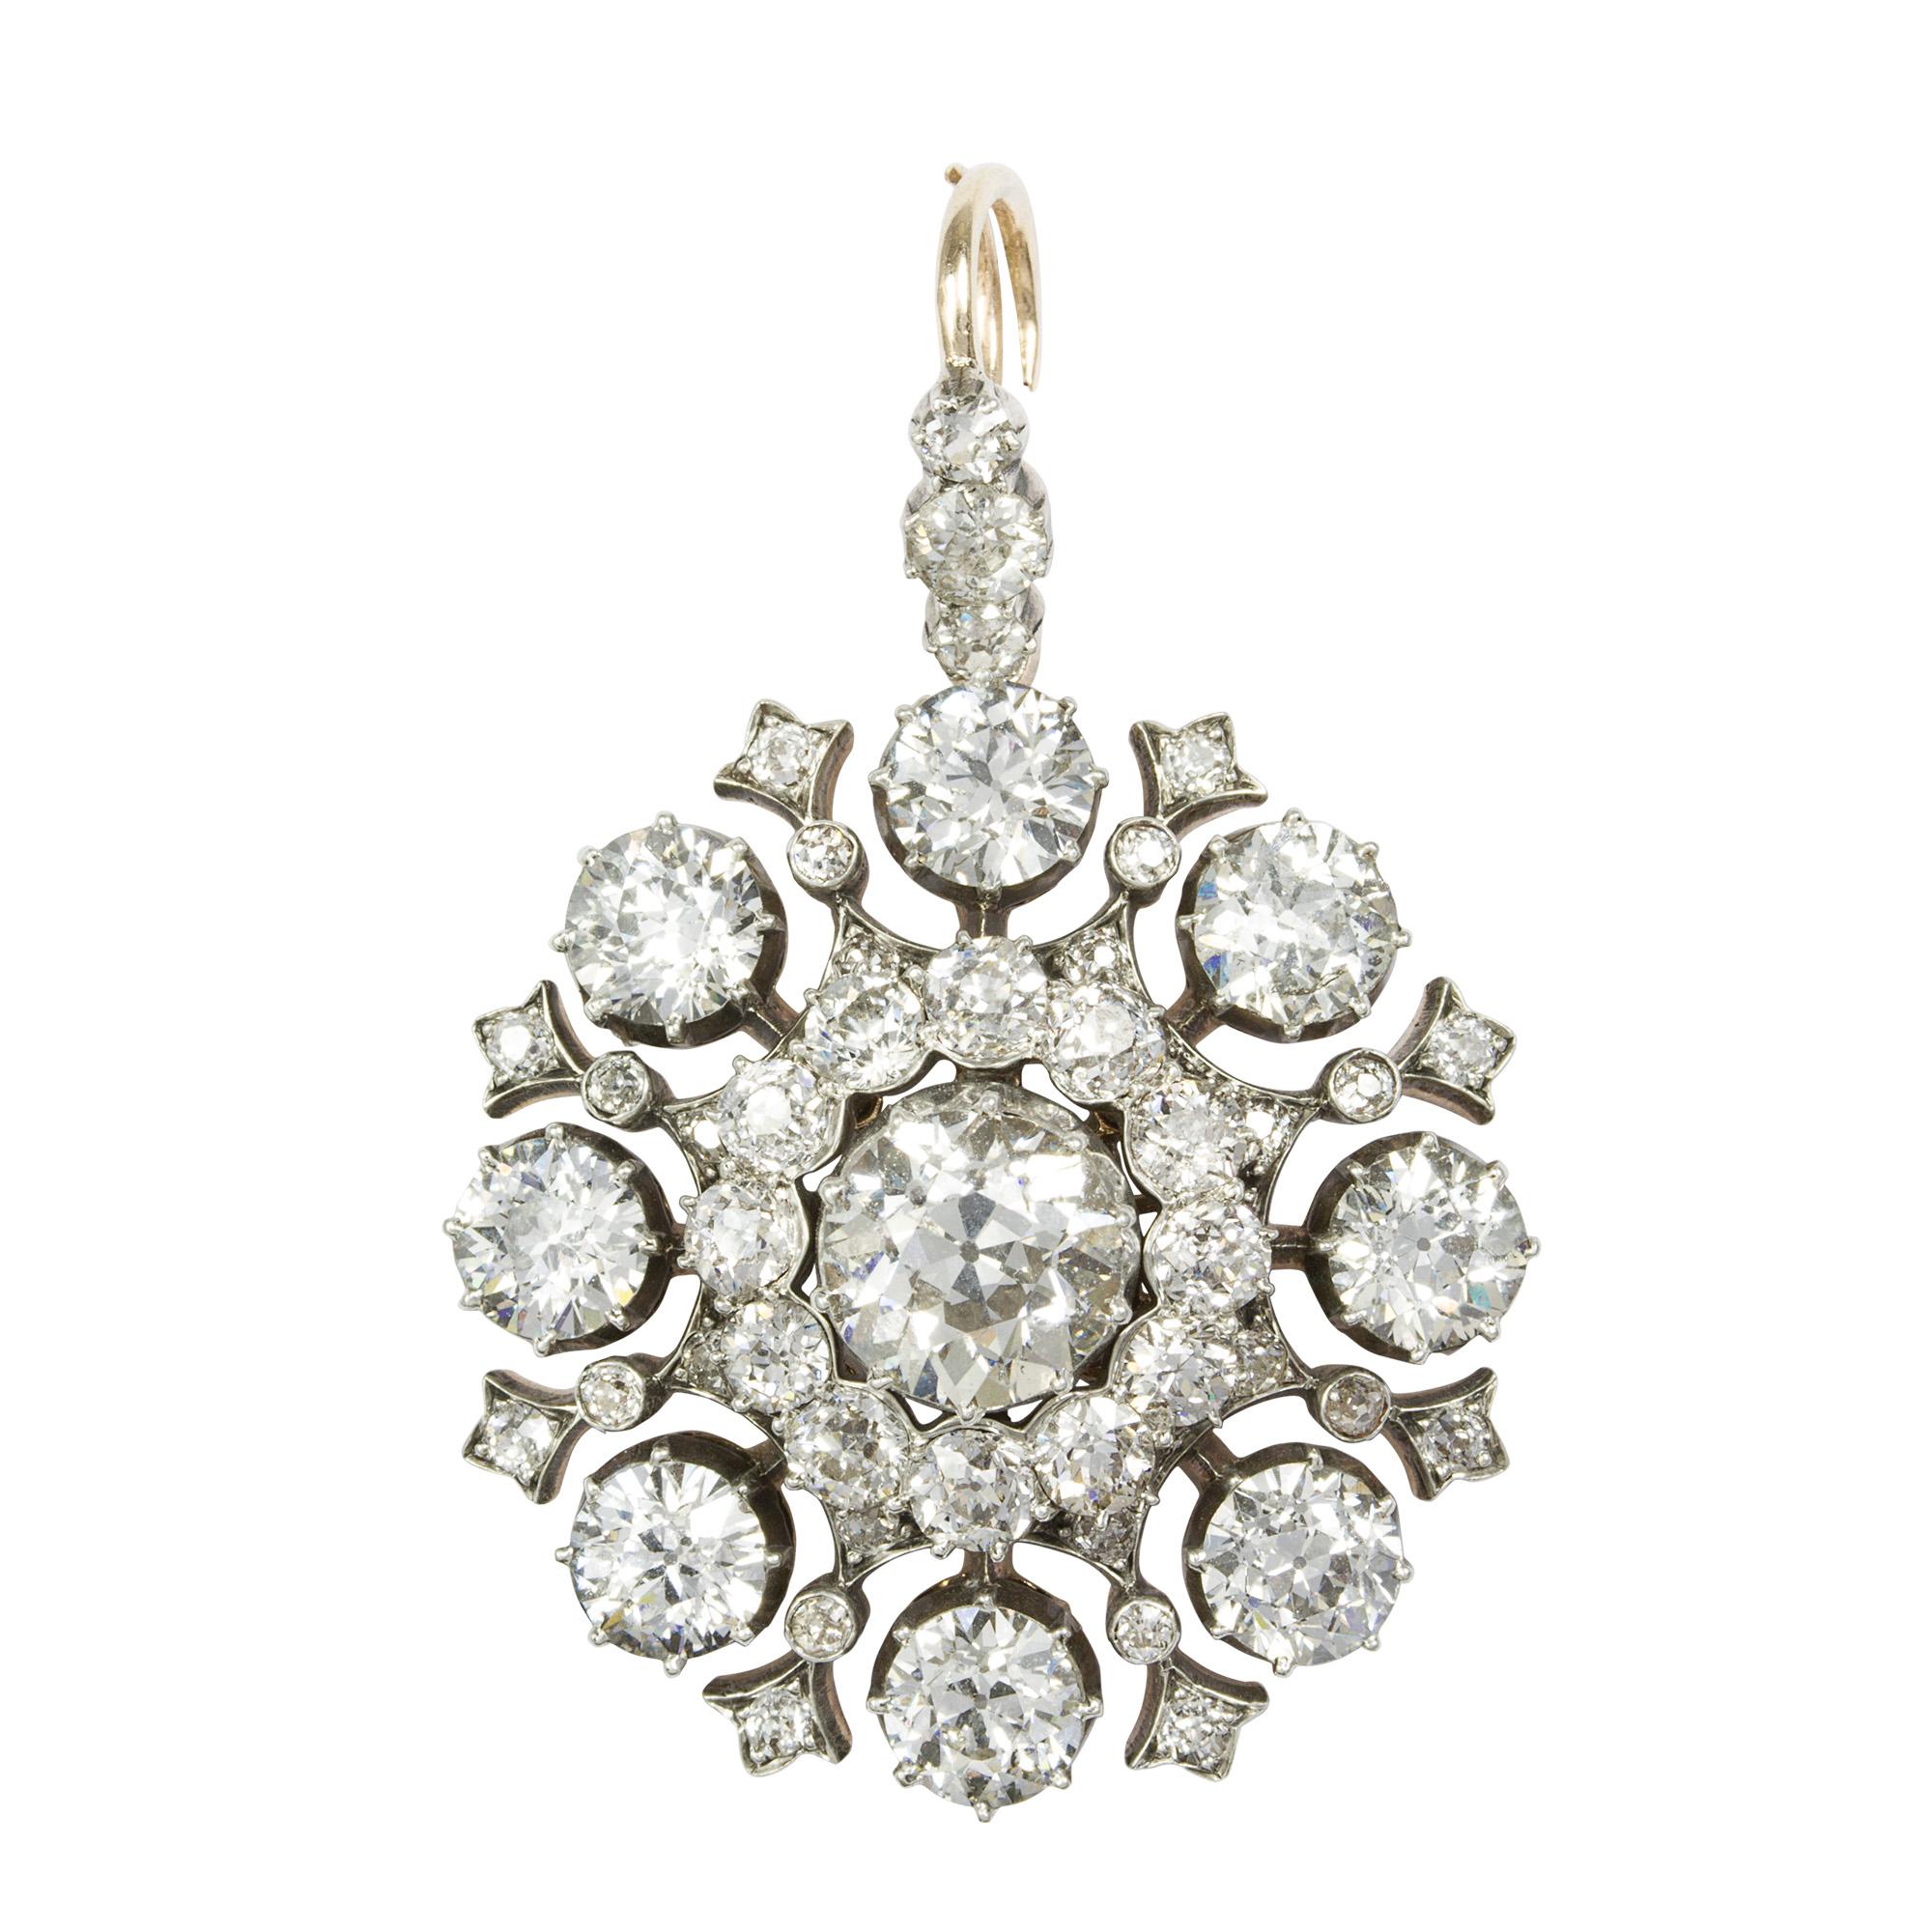 Brilliant Cut Victorian Diamond Brooch-Pendant For Sale